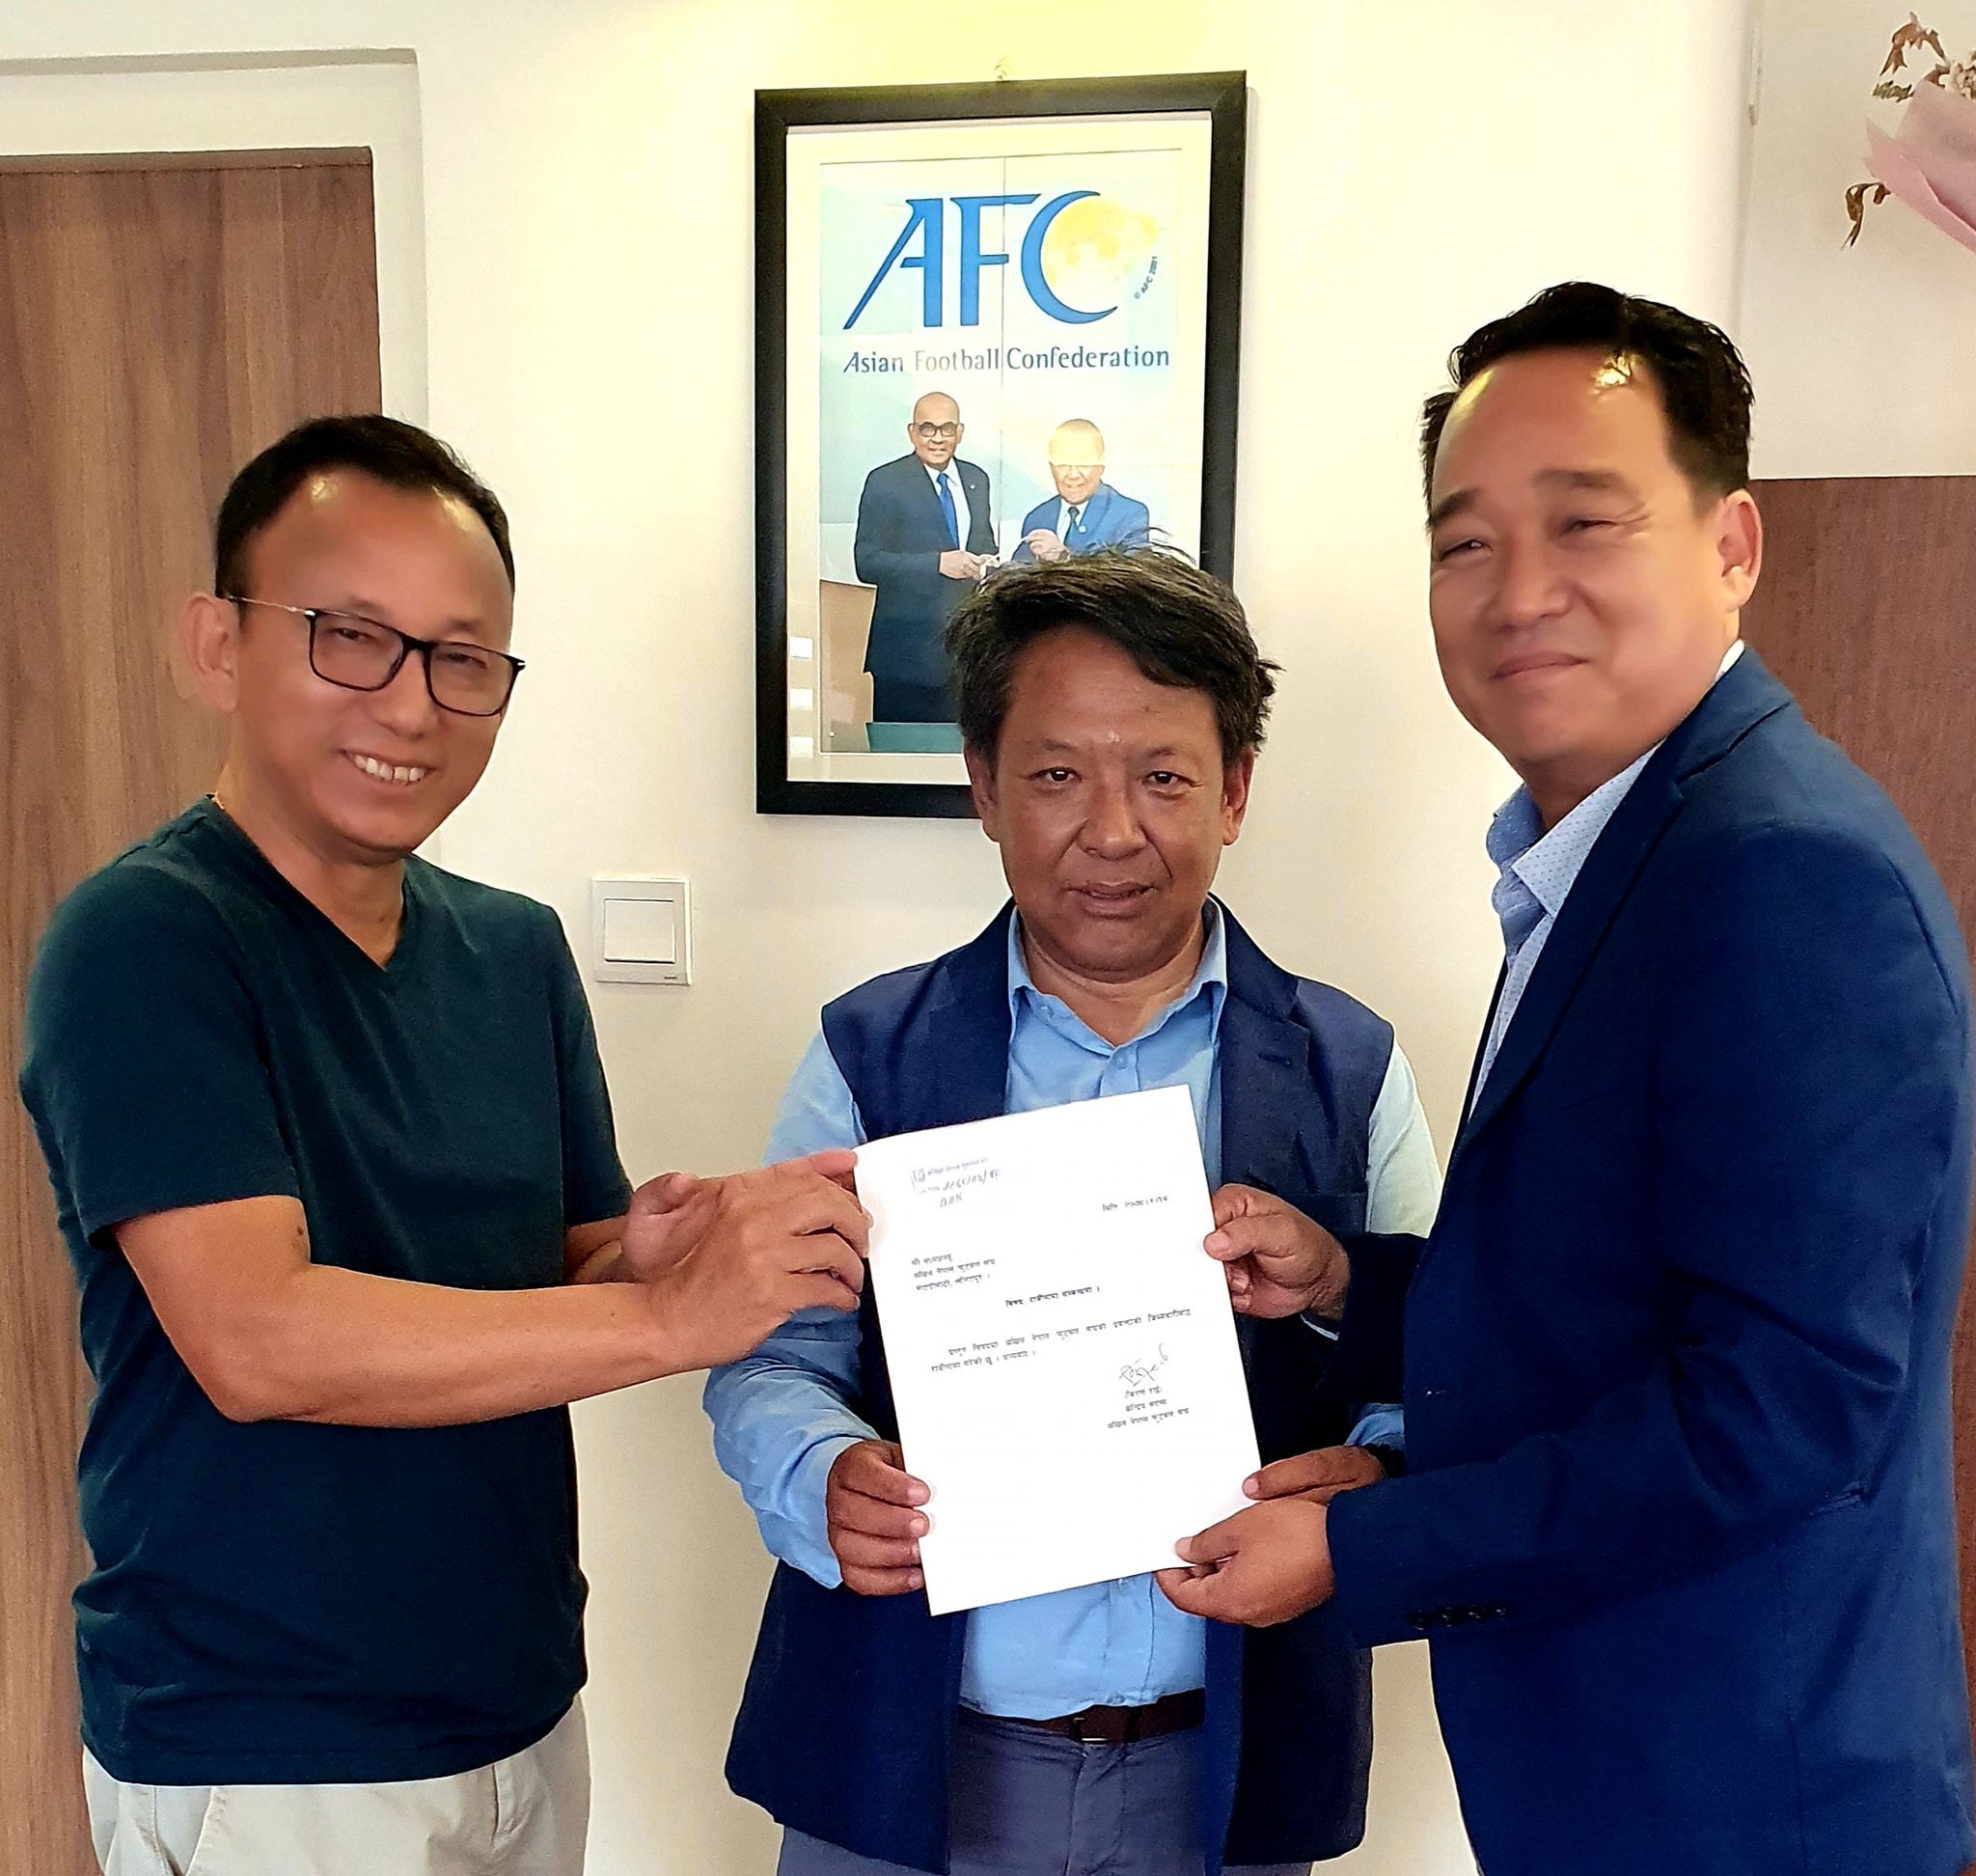 अखिल नेपाल फुटबल संघका प्रवक्ताले दिए राजीनामा